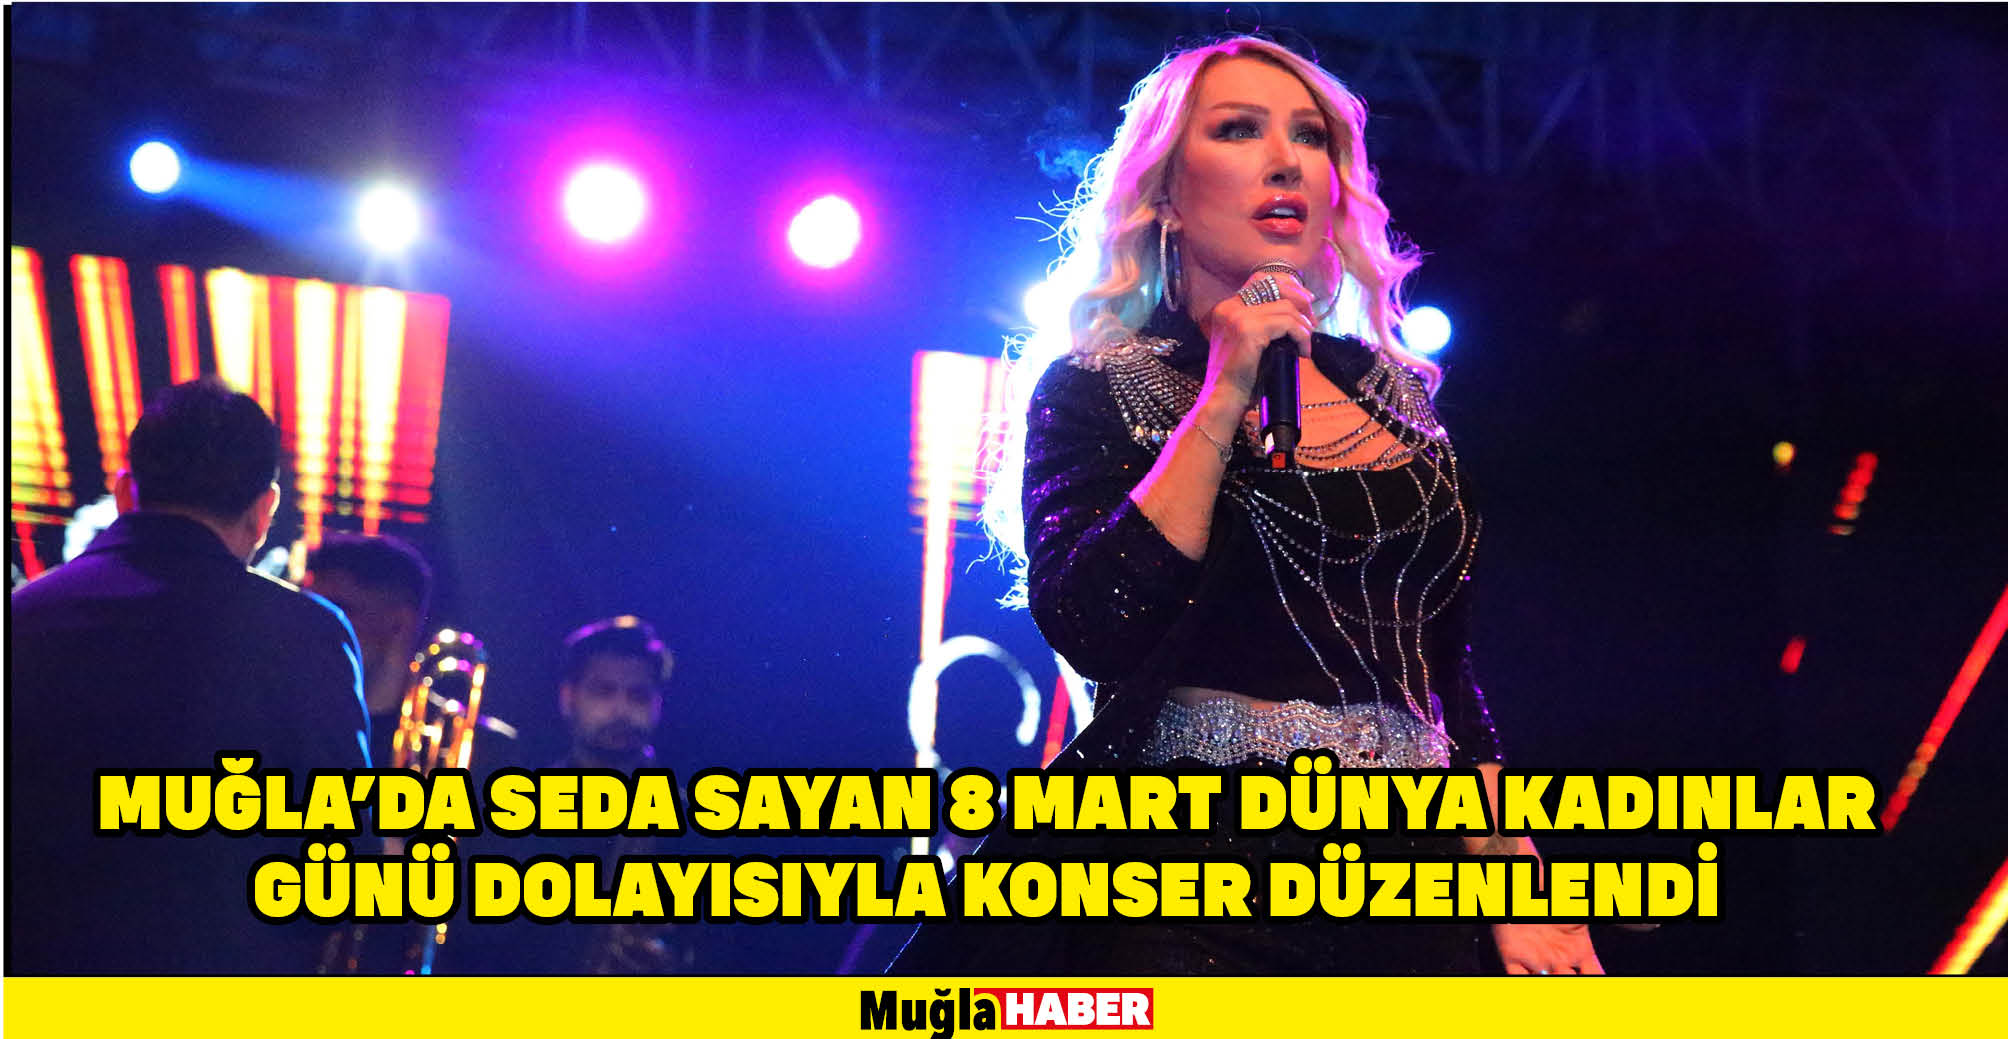 Muğla'da Seda Sayan 8 Mart Dünya Kadınlar Günü dolayısıyla konser düzenlendi